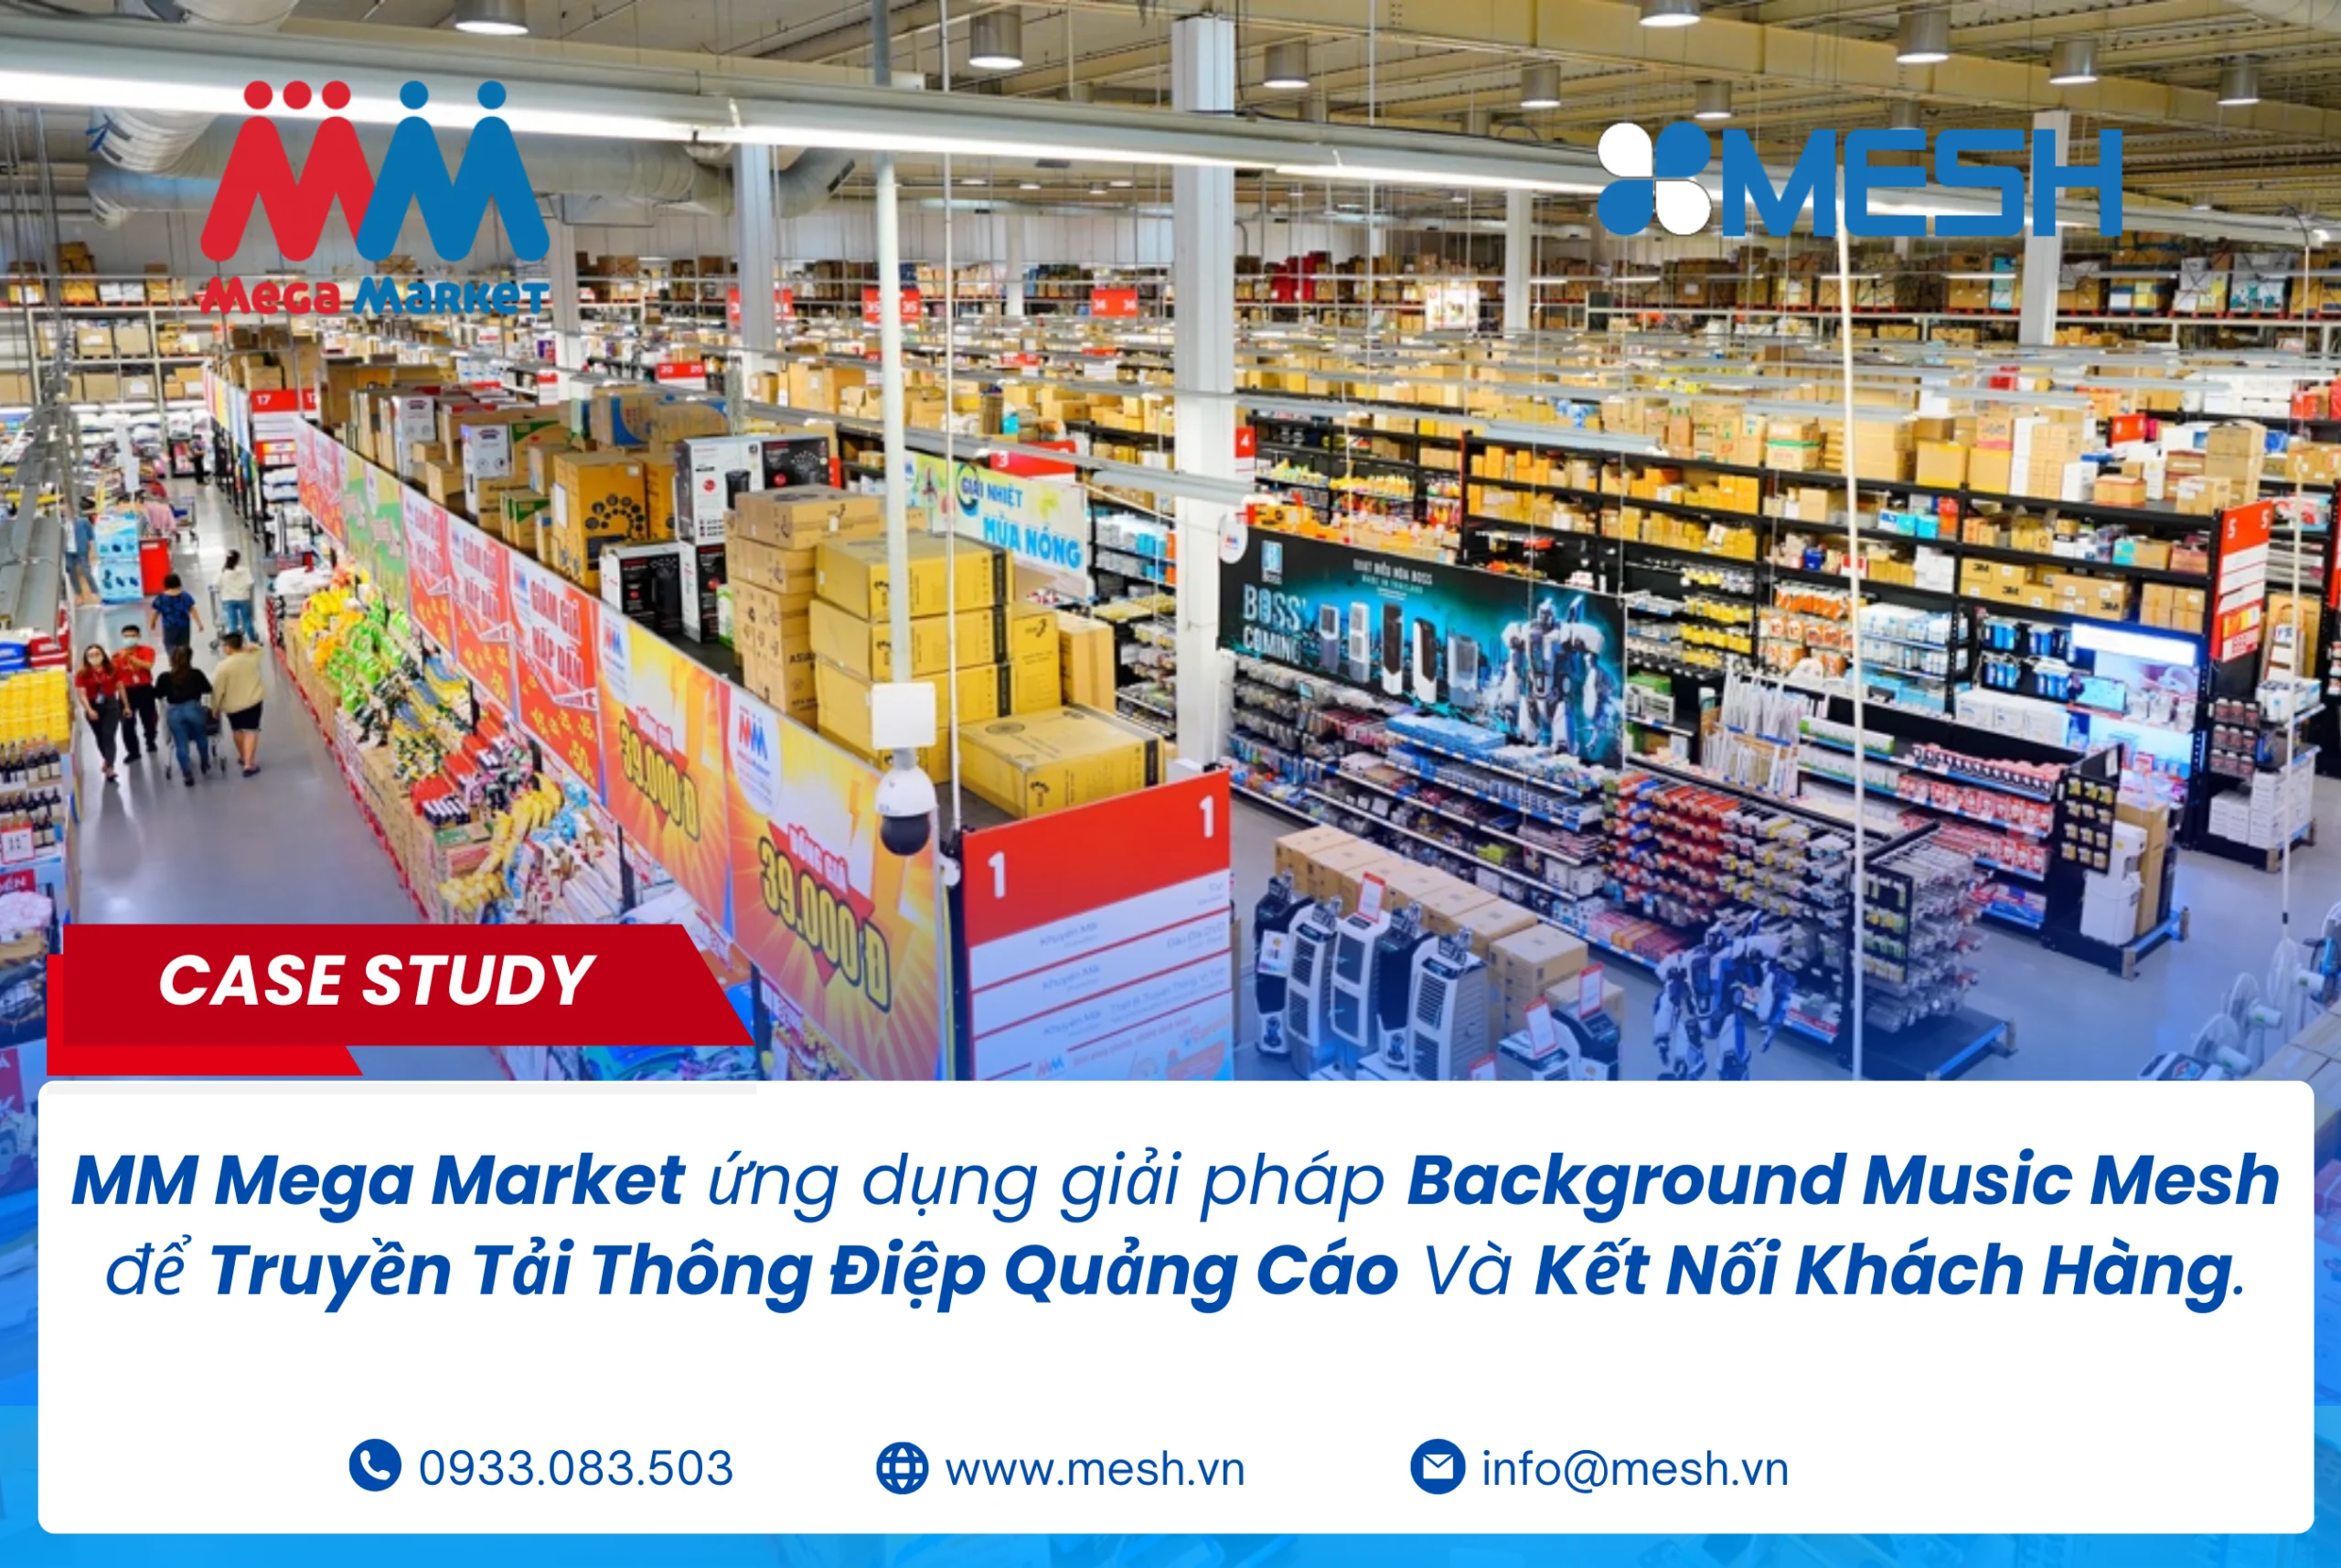 MM Mega Market ứng dụng giải pháp Background Music Mesh để Truyền Tải Thông Điệp Quảng Cáo Và Kết Nối Khách Hàng hiệu quả